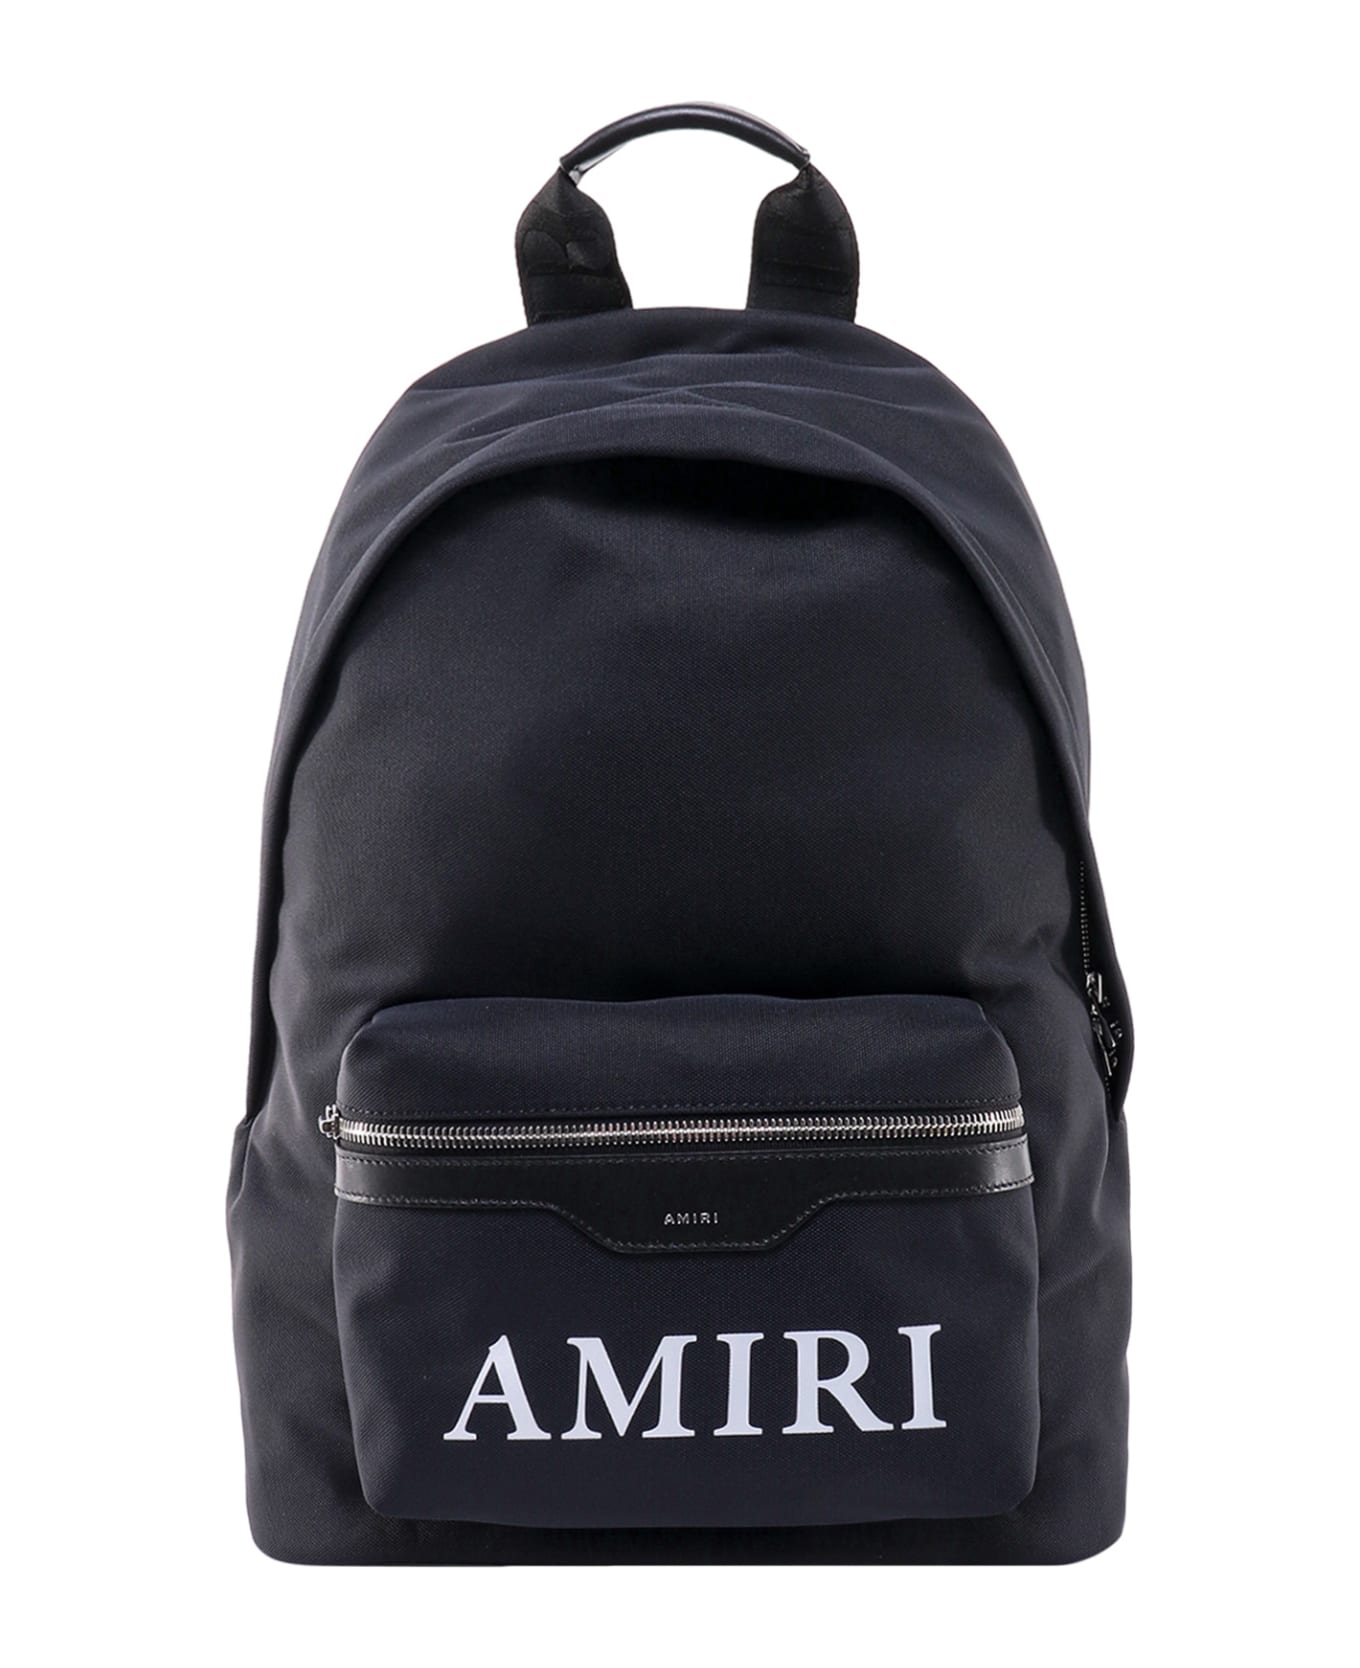 AMIRI Backpack - Black